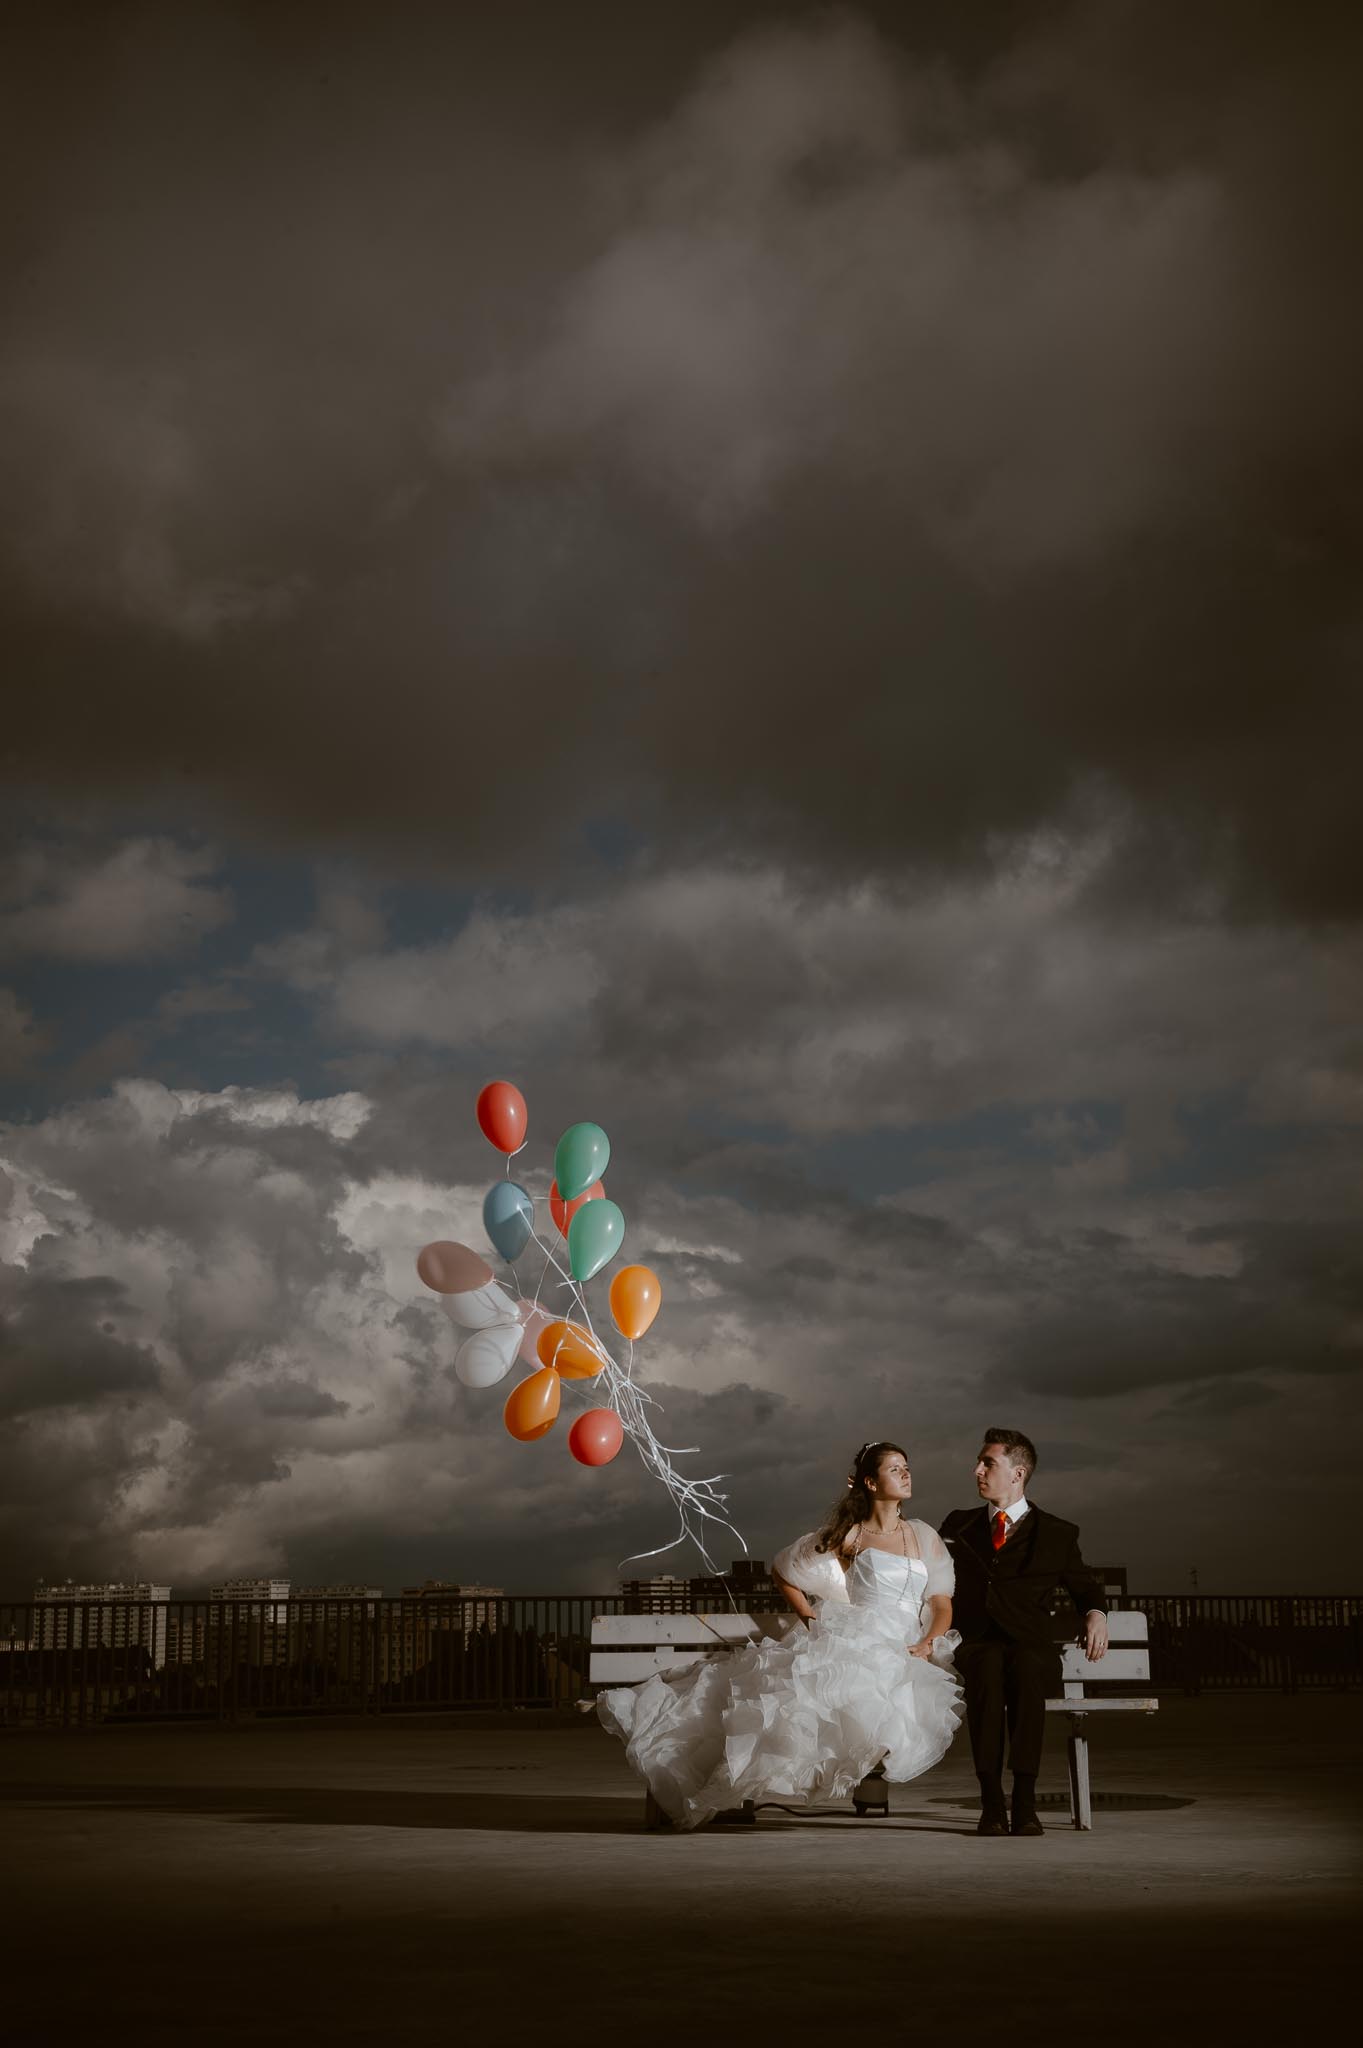 Séance couple après mariage graphique & poétique dans une ambiance industrielle près de Nantes par Geoffrey Arnoldy photographe